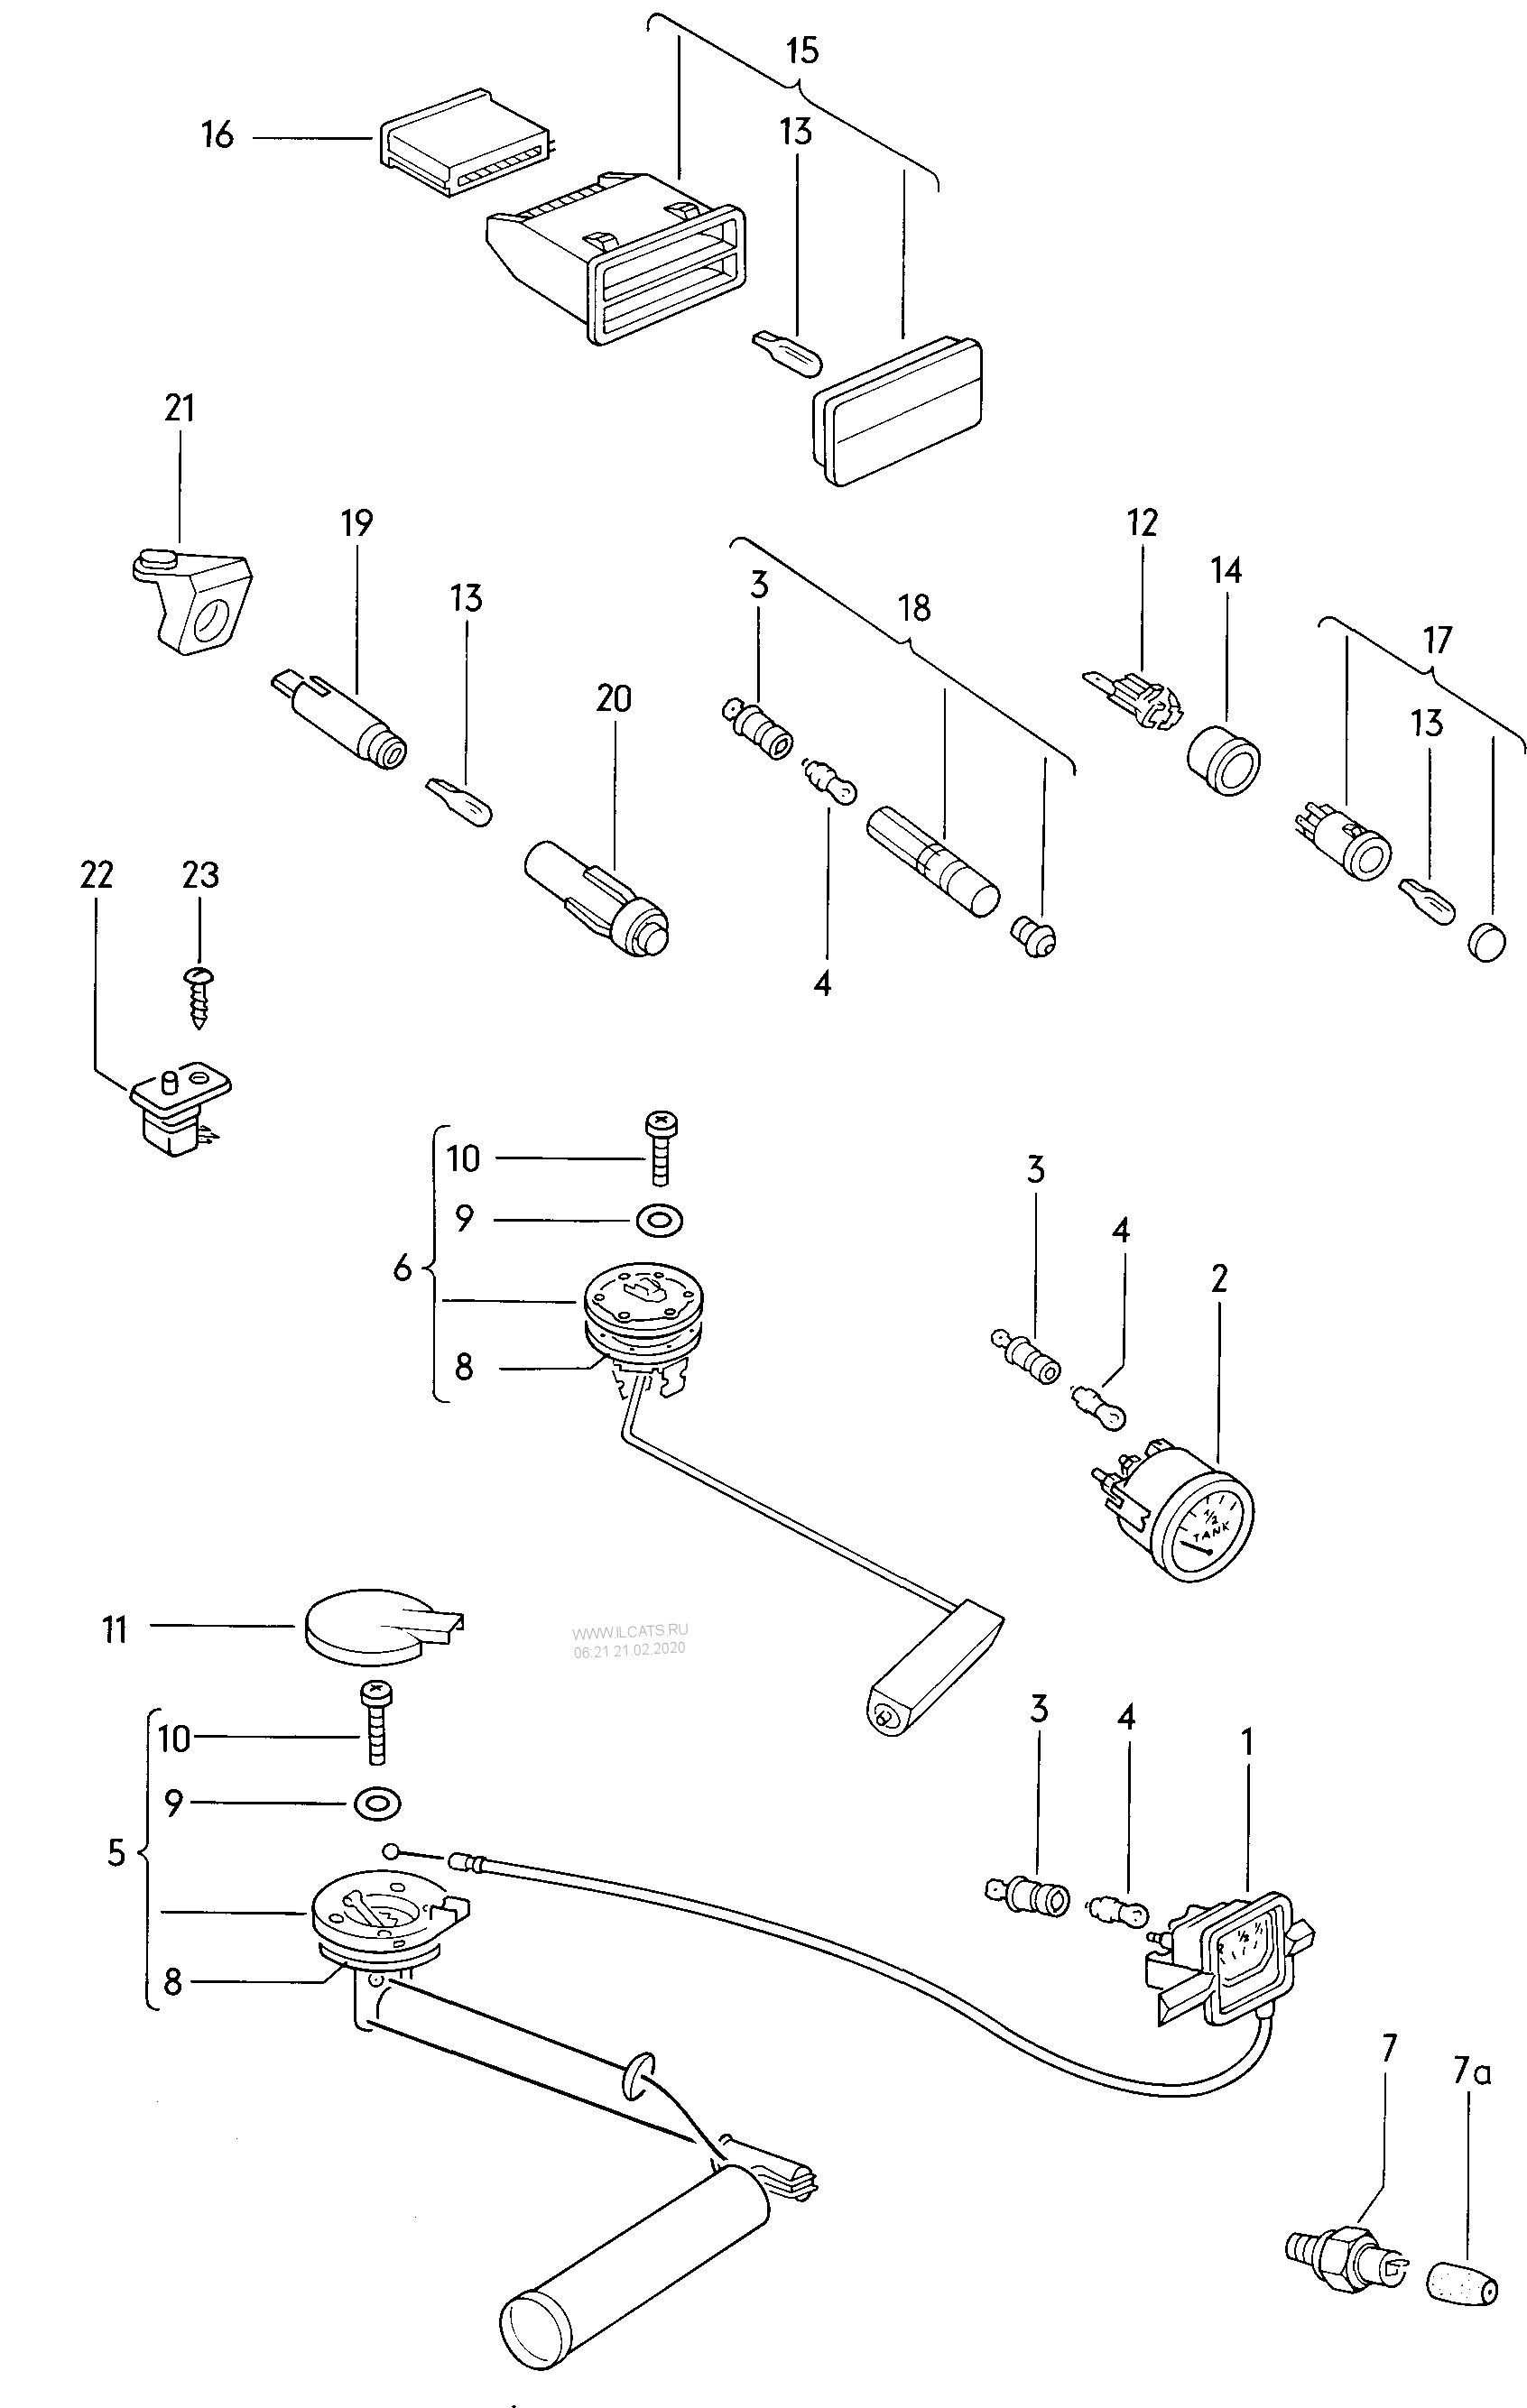 Vdo Oil Pressure Gauge Wiring Instructions Ob 2945] Oil Pressure Sender Switch Schematic Wiring Diagram Of Vdo Oil Pressure Gauge Wiring Instructions